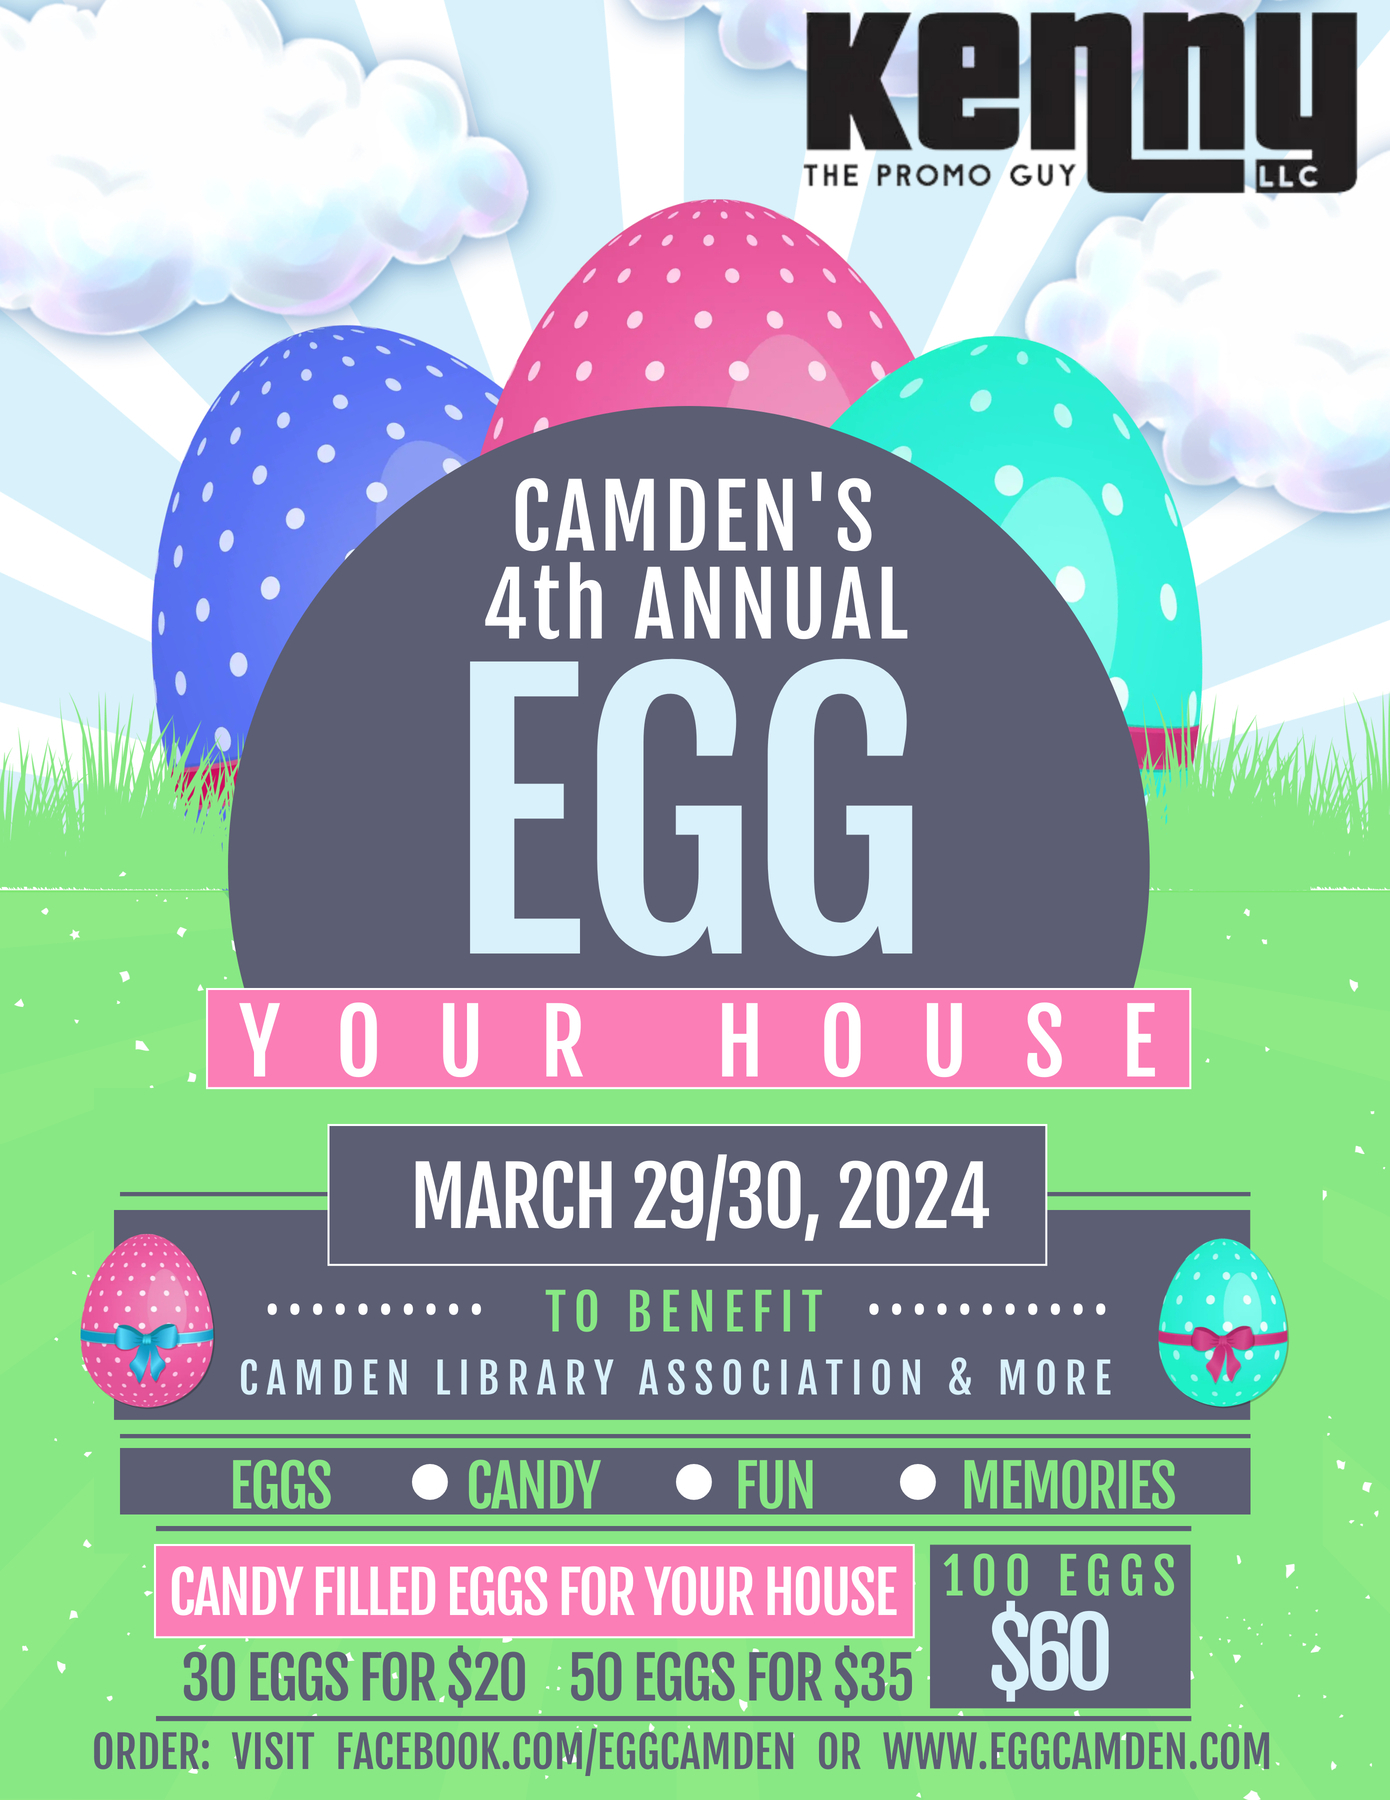 2024 Camden Egg Your House Fundraiser Poster